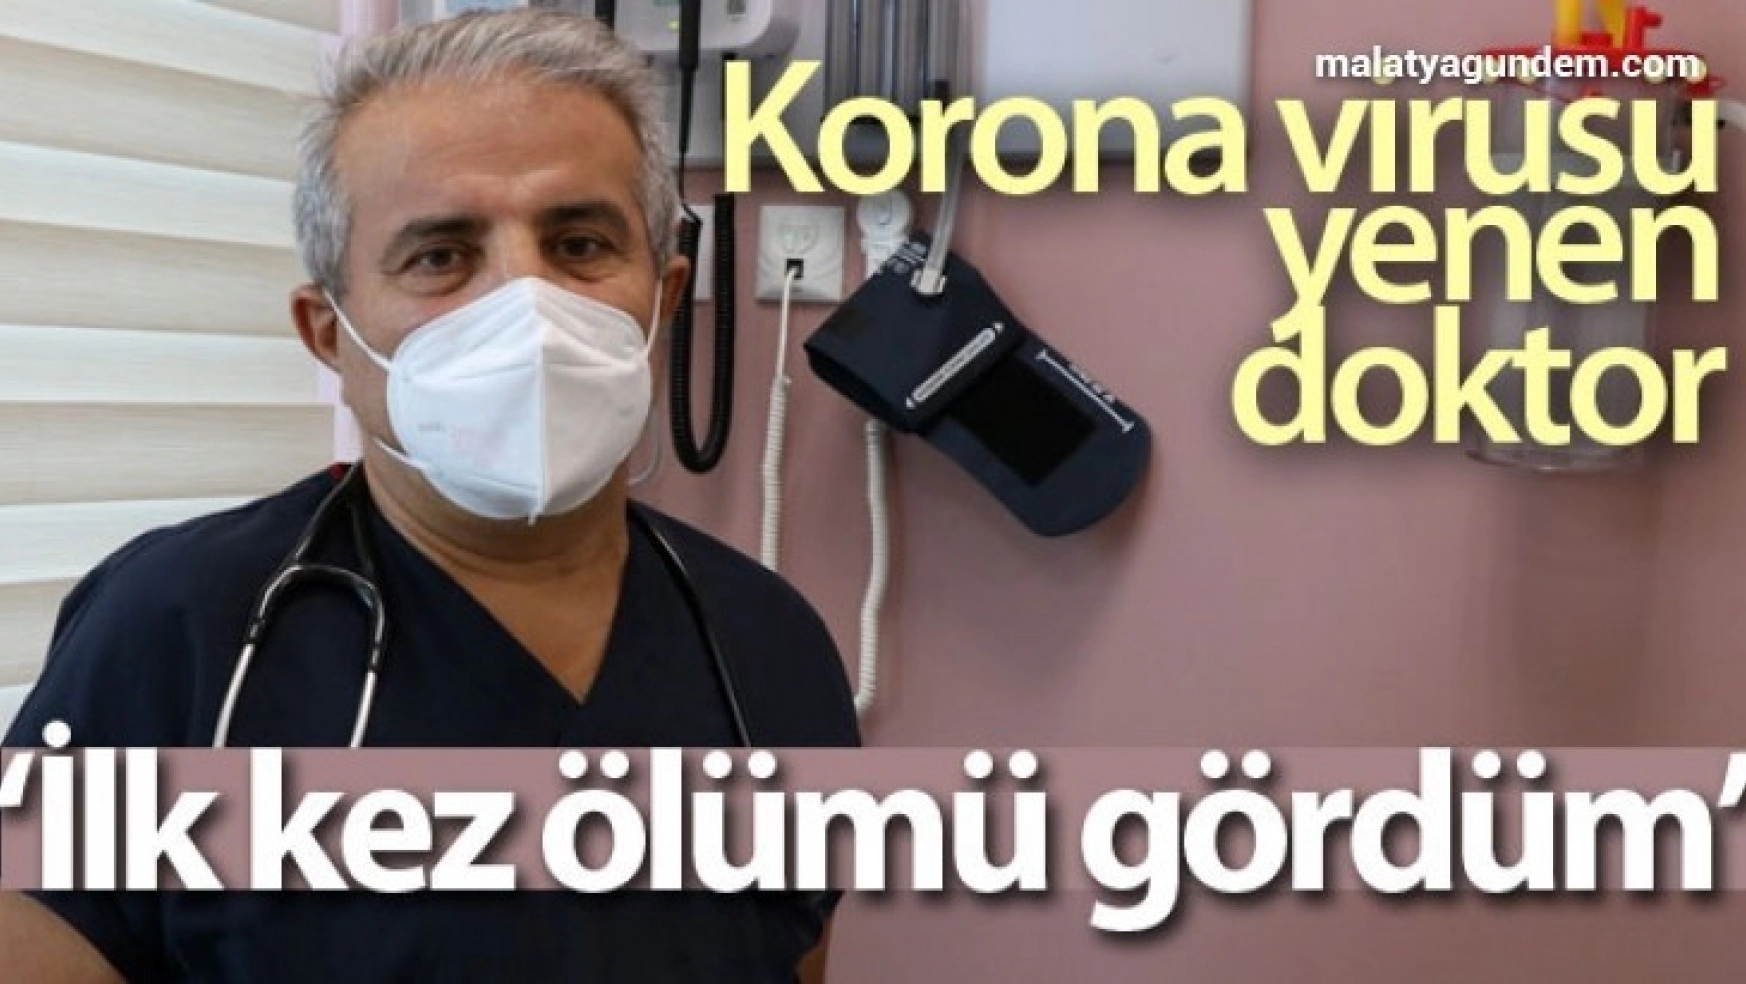 Korona virüsü yenen doktor: 'İlk kez ölümü gördüm'